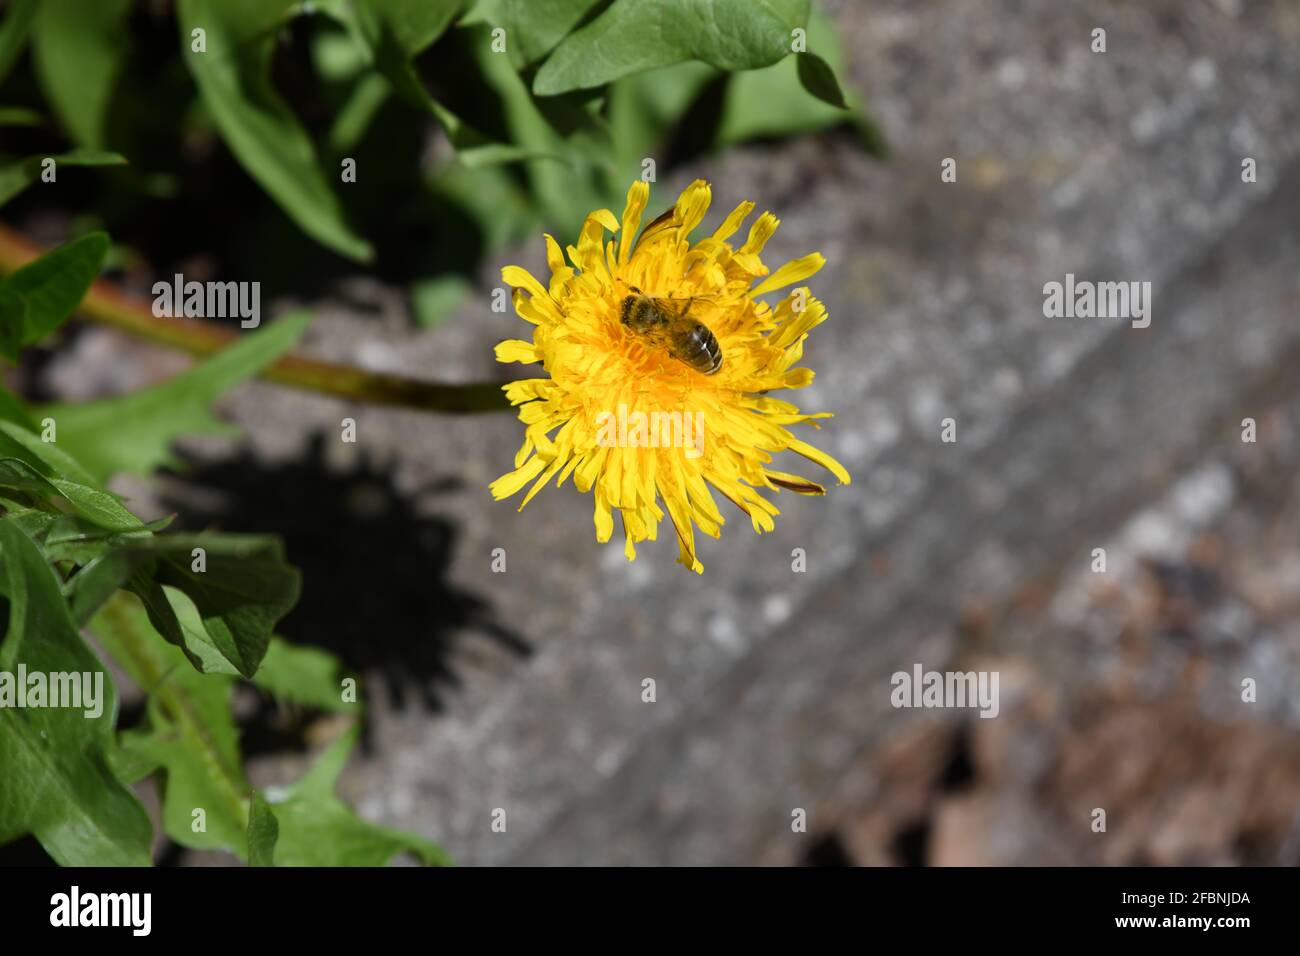 Honigbiene - Apis mellifera - labt sich an einer frisch geöffneten Löwenzahnblüte - taraxacum Stock Photo